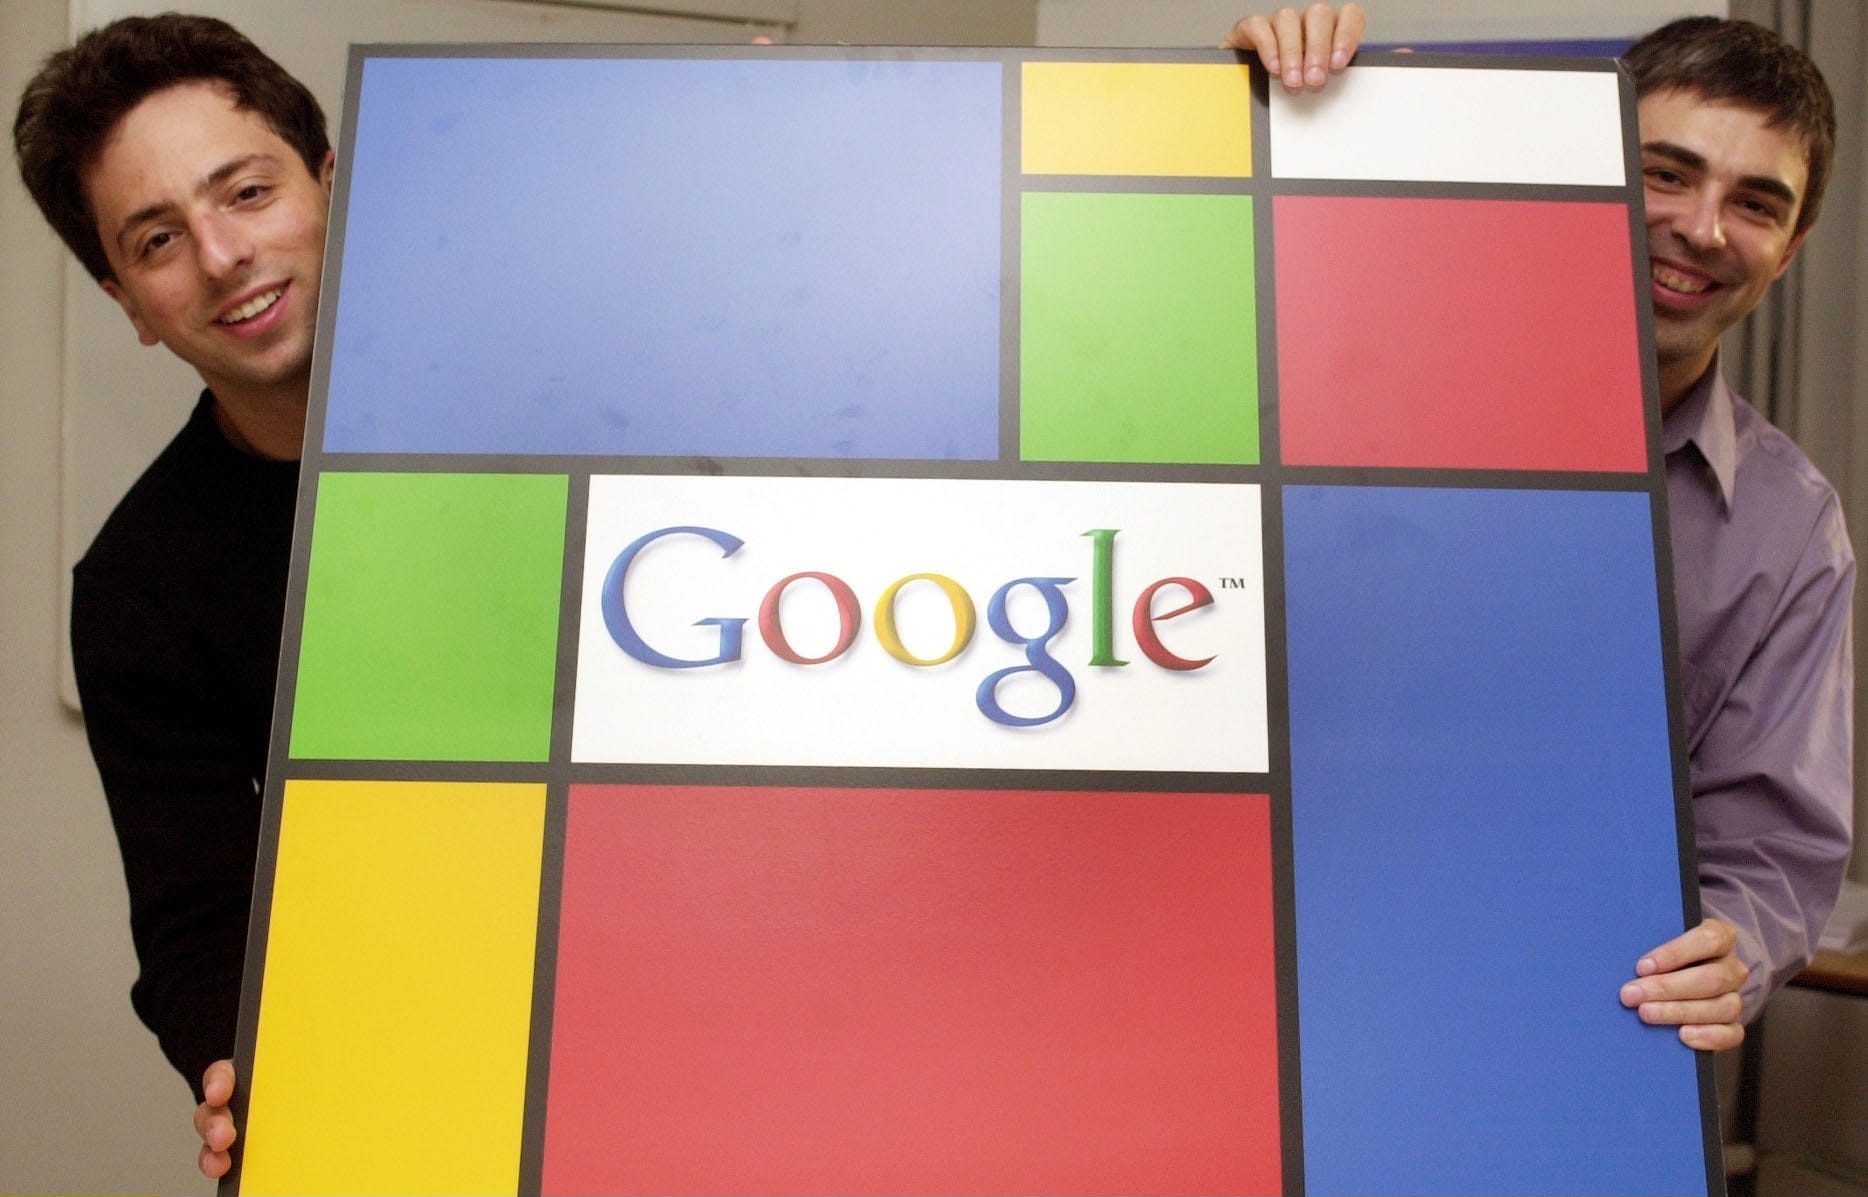 Sergey Brin und Larry Page posieren im September 2003 mit einem Google-Logo im abstrakten Stil von Piet Mondrian, das von beiden Seiten des großen Displays hervorlugt.